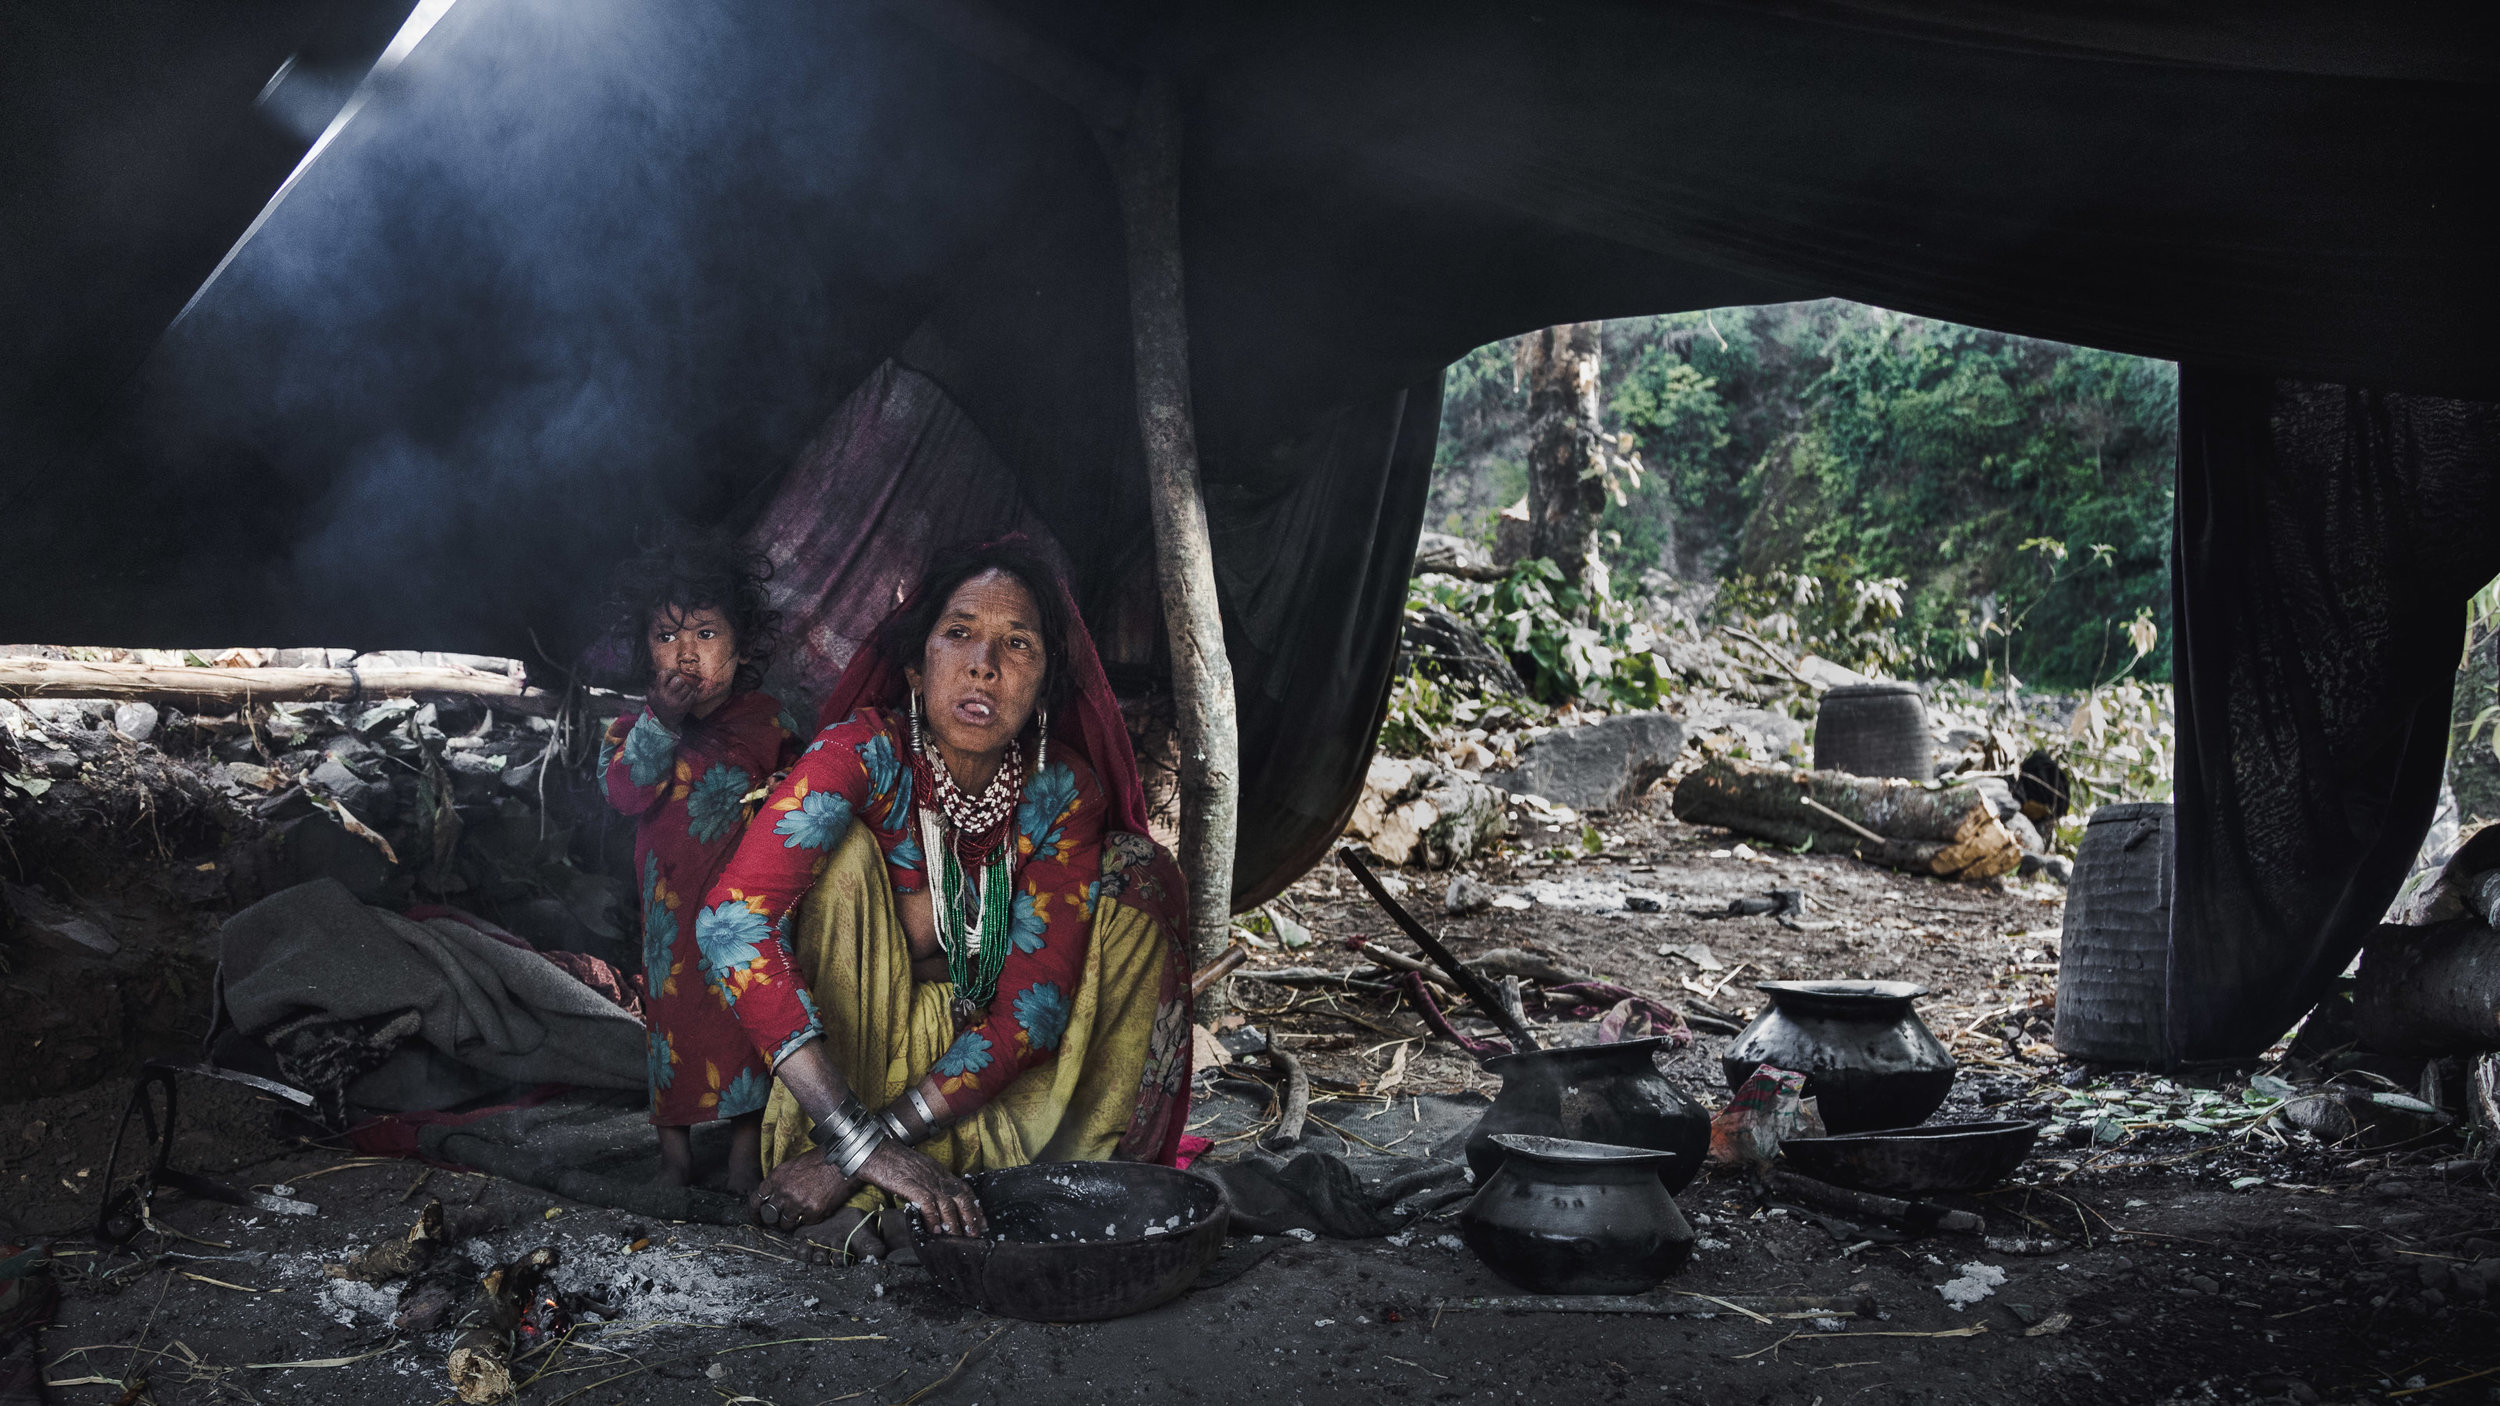   Voedsel en levenswijze    De laatste nomaden van Nepal  